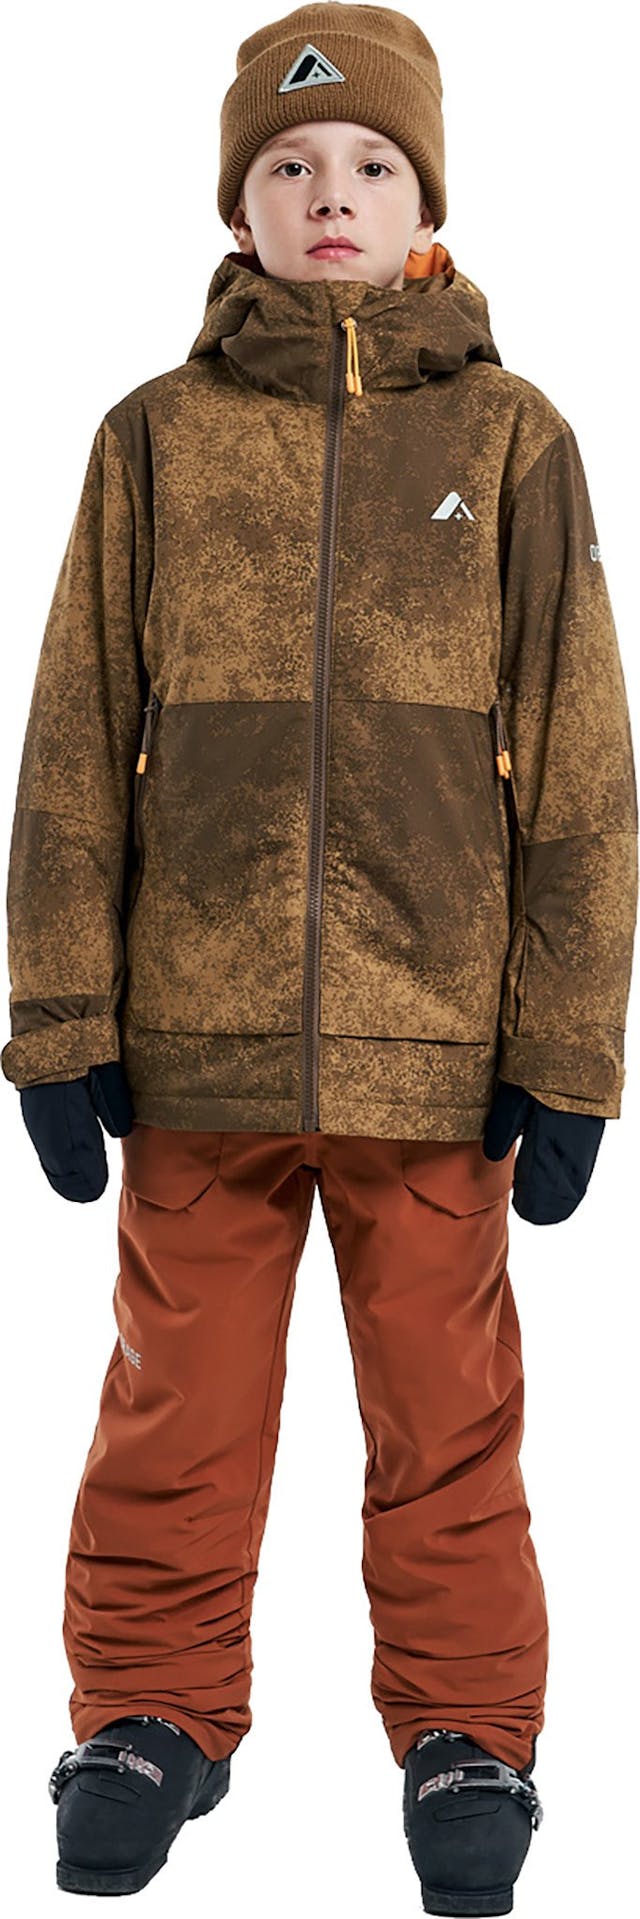 Product image for Slope Jacket - Boys